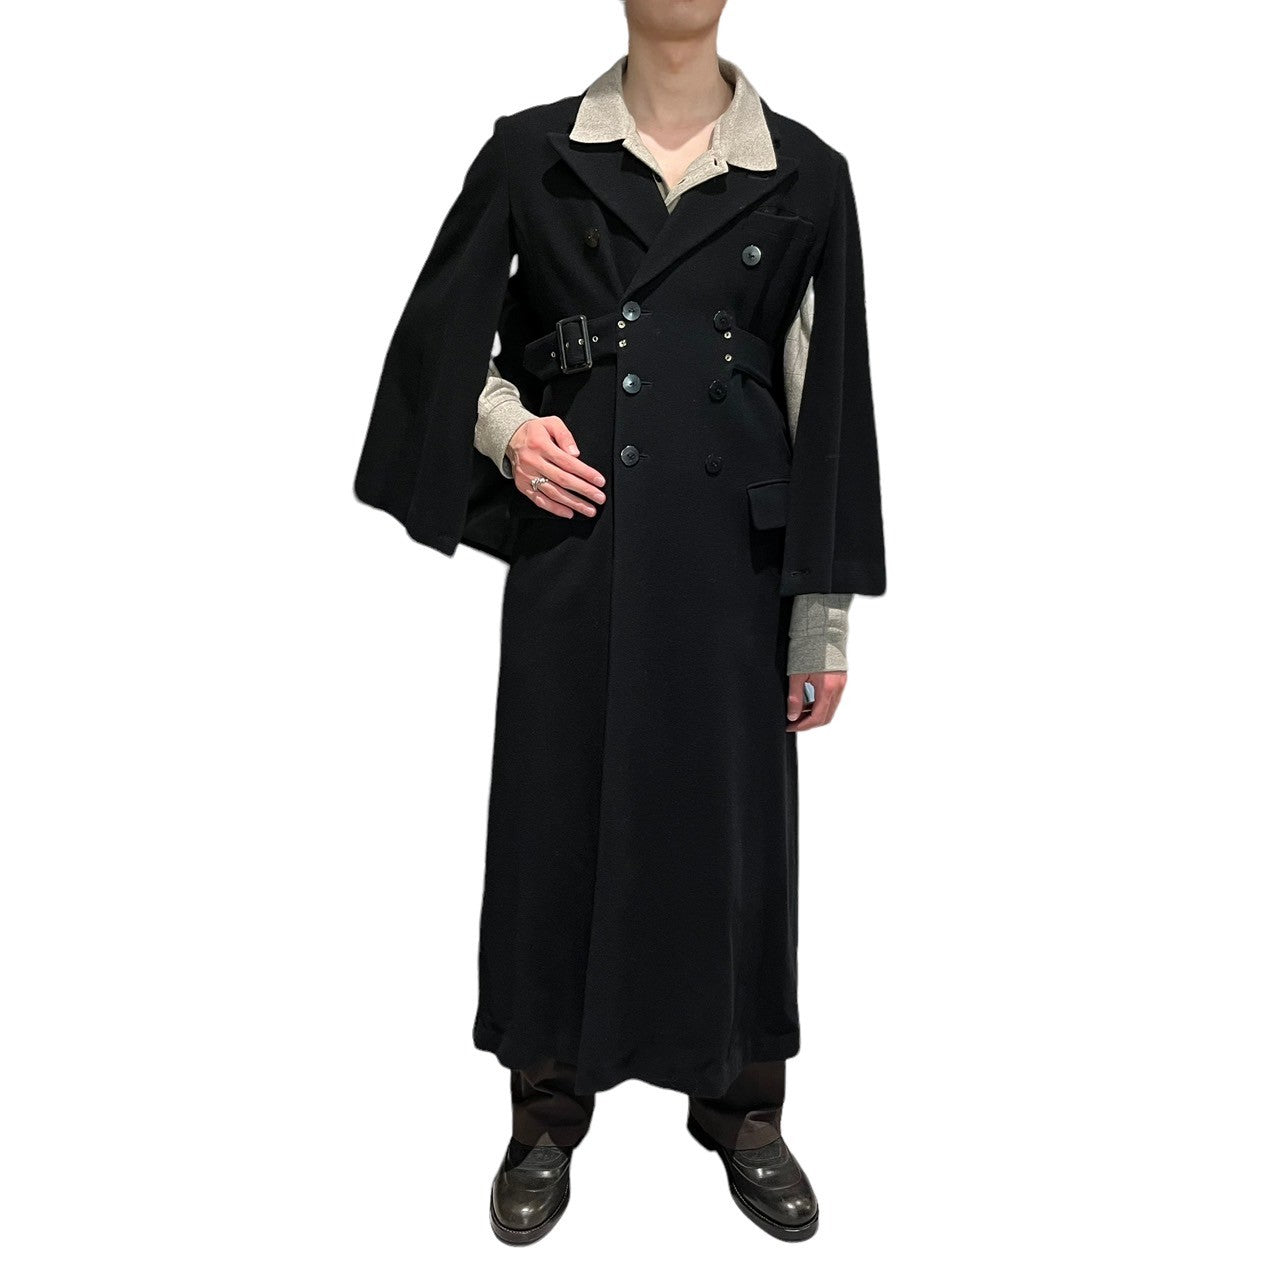 Jean Paul GAULTIER FEMME(ジャンポールゴルチエファム) 90’s ~ 00's double-breasted cloak wool long coat ダブル チェスター マント ウール スーパー ロング コート 570-5.CO.YG.SA.1424 40(L程度) ブラック archive アーカイブ